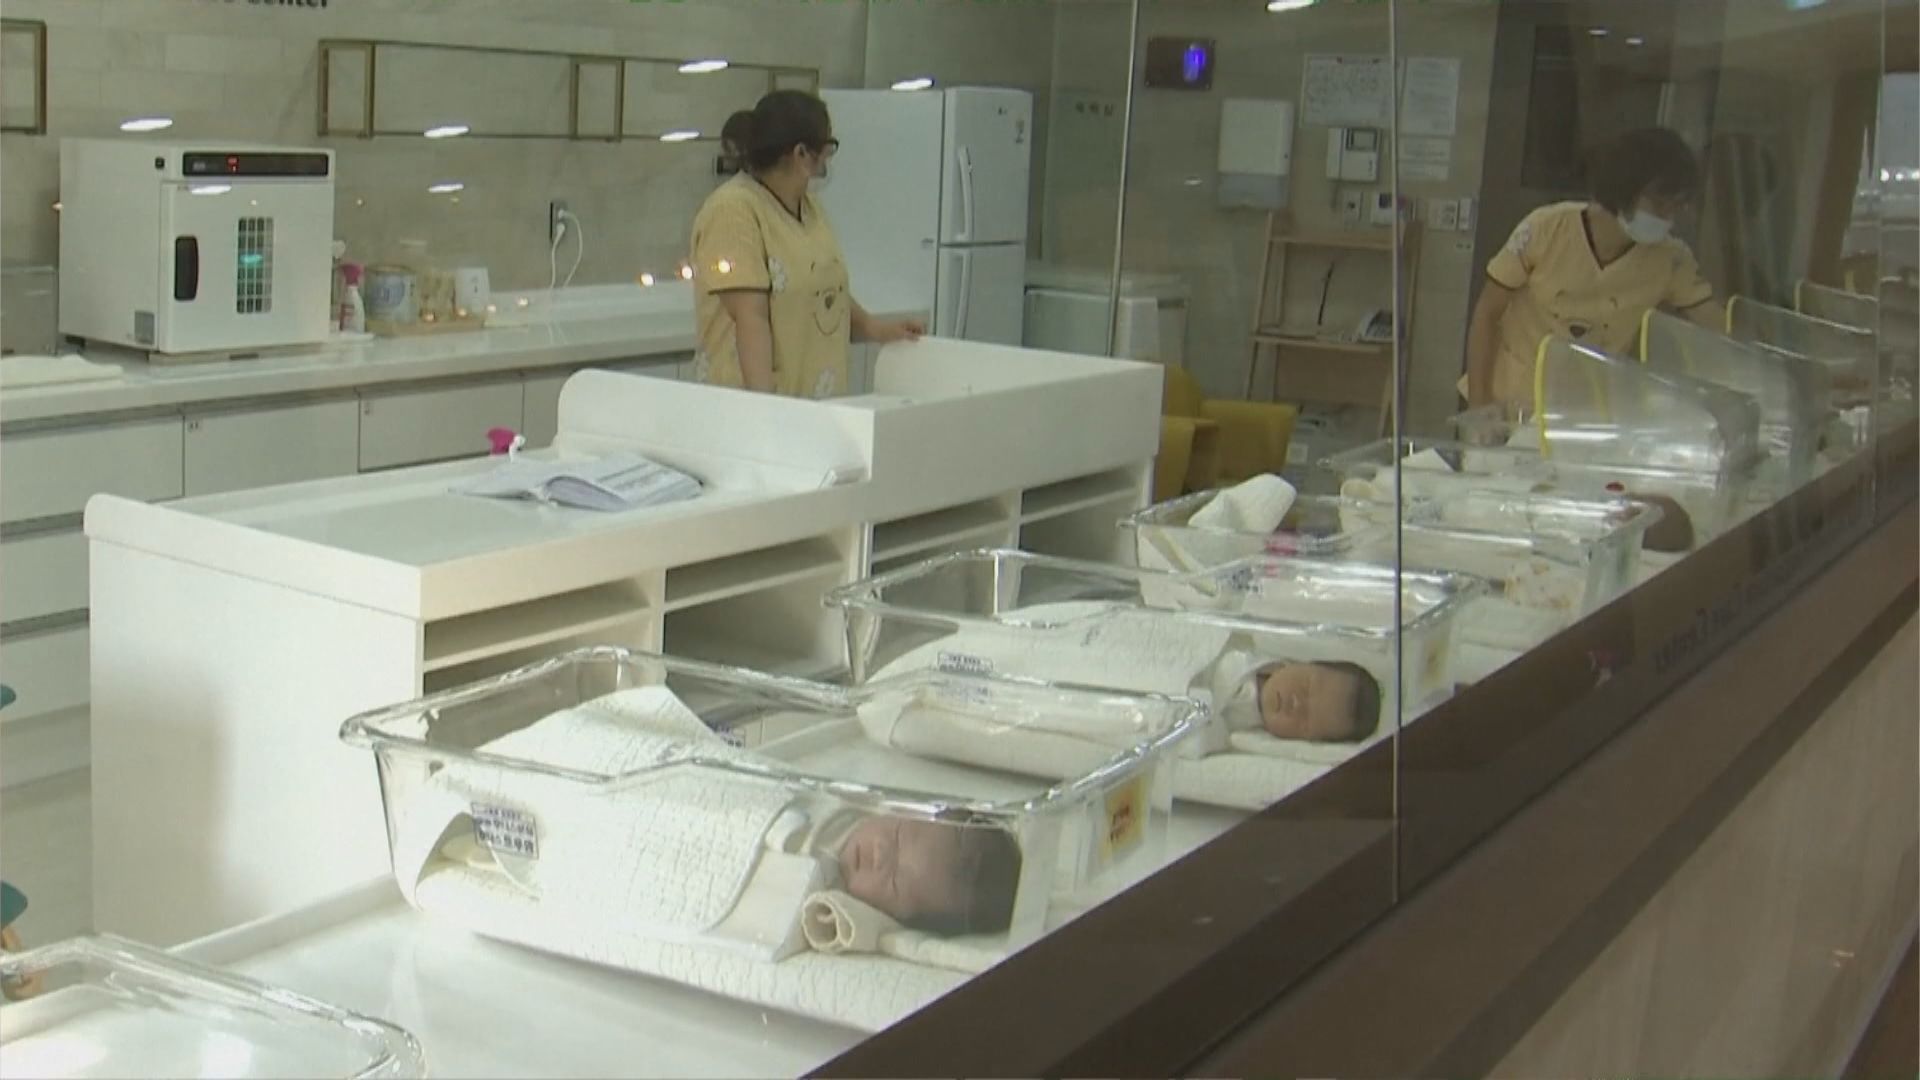 南韓宣布進入人口緊急狀態 設新部門應對低生育率和老齡化